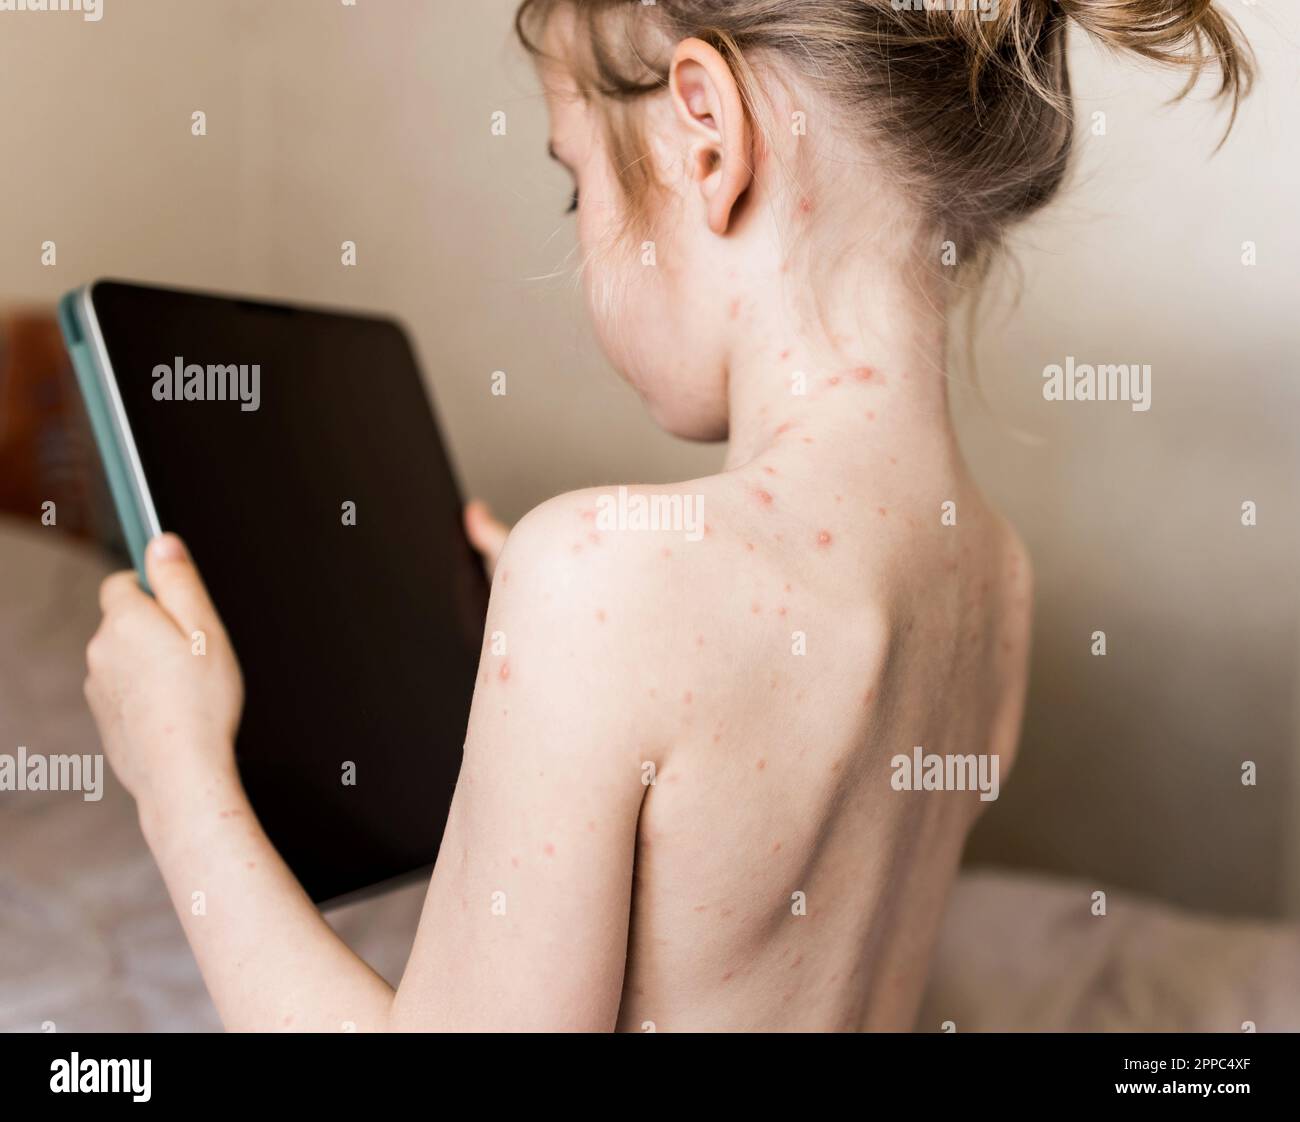 Bambina seduta con la schiena alla fotocamera e guardando il tablet. Varicella, virus della varicella o rash vescicolare sul corpo e sul viso del bambino. Bambino con re Foto Stock